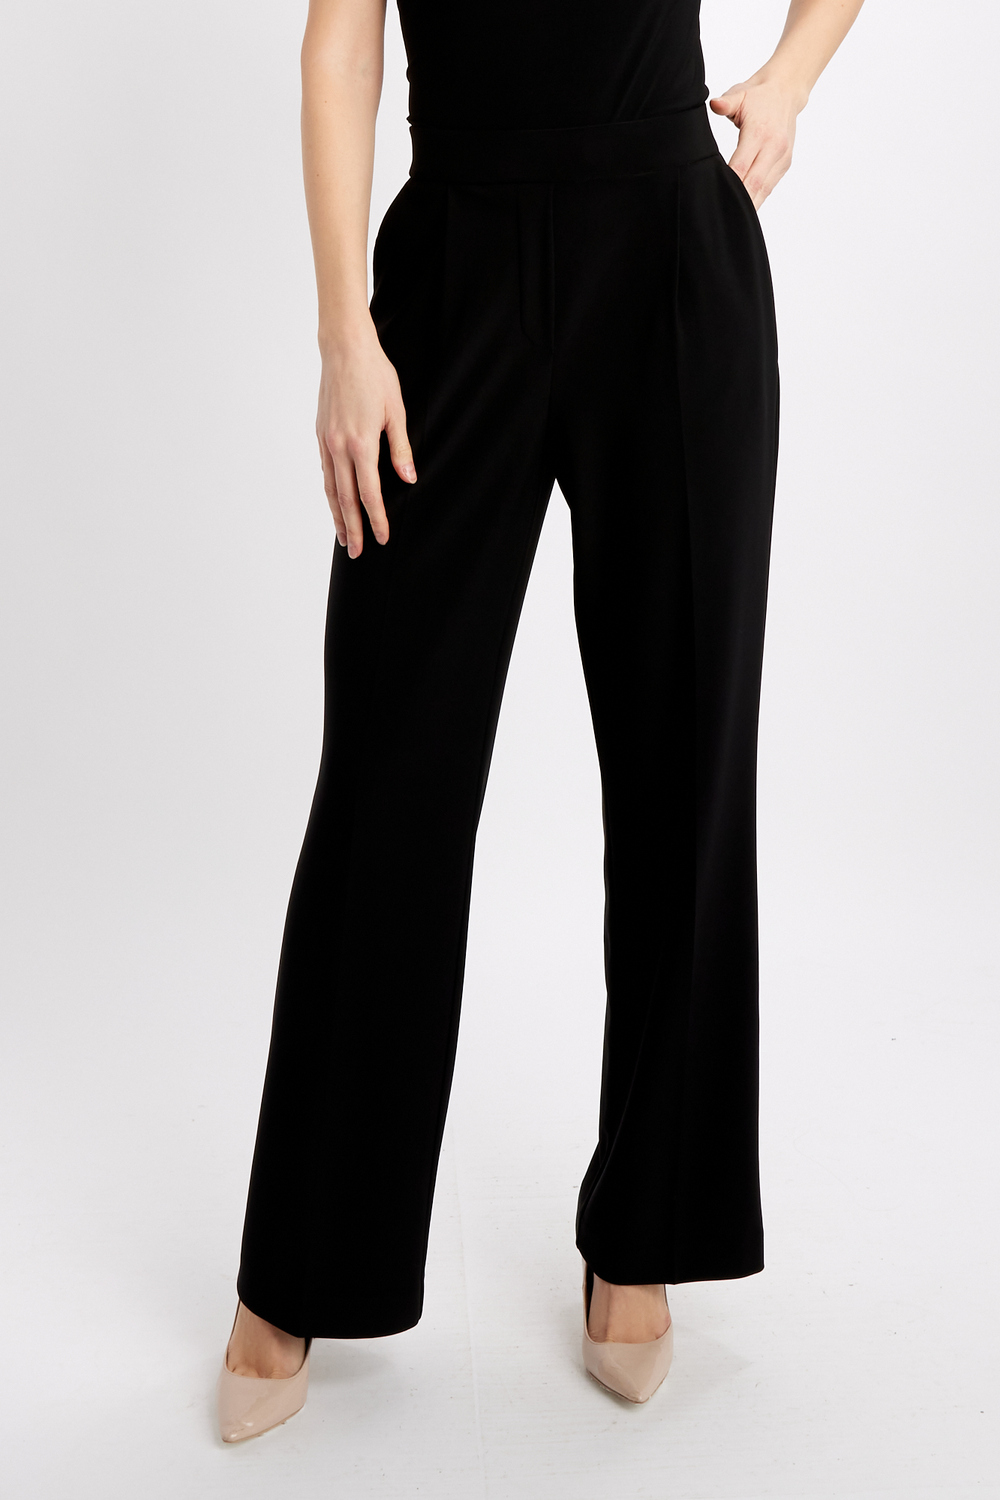 Pantalon de tailleur plissé modèle 241095. Noir